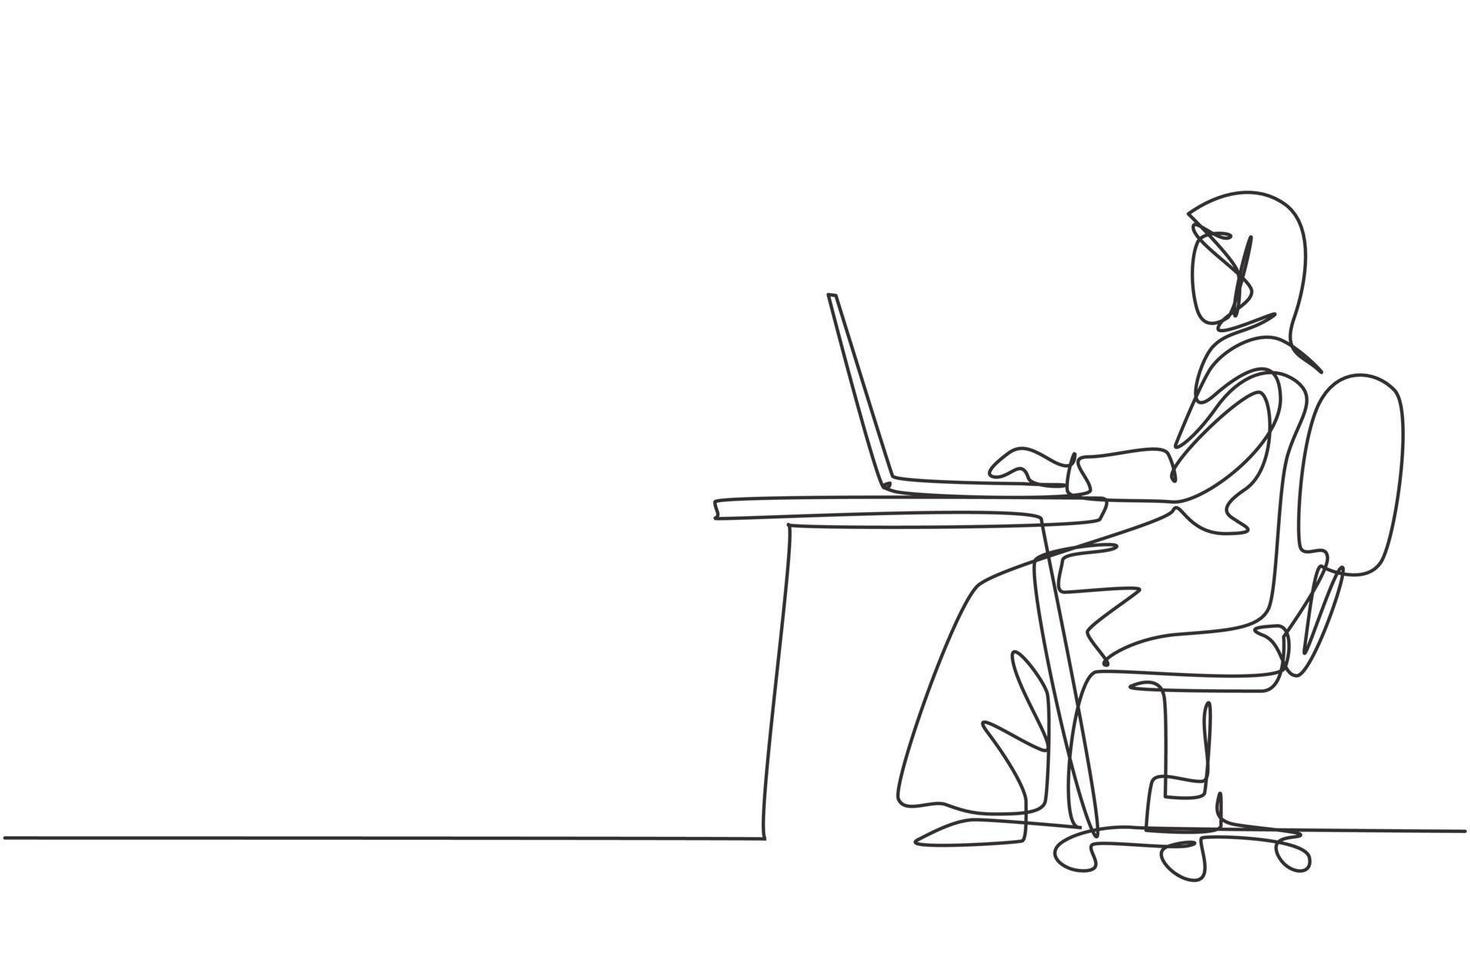 einzelne eine linie zeichnung arabische frau mit laptop sitzt auf einem stuhl um den schreibtisch. Fernstudium, Online-Kurse und Studienkonzept. moderne durchgehende Linie zeichnen Design-Grafik-Vektor-Illustration vektor